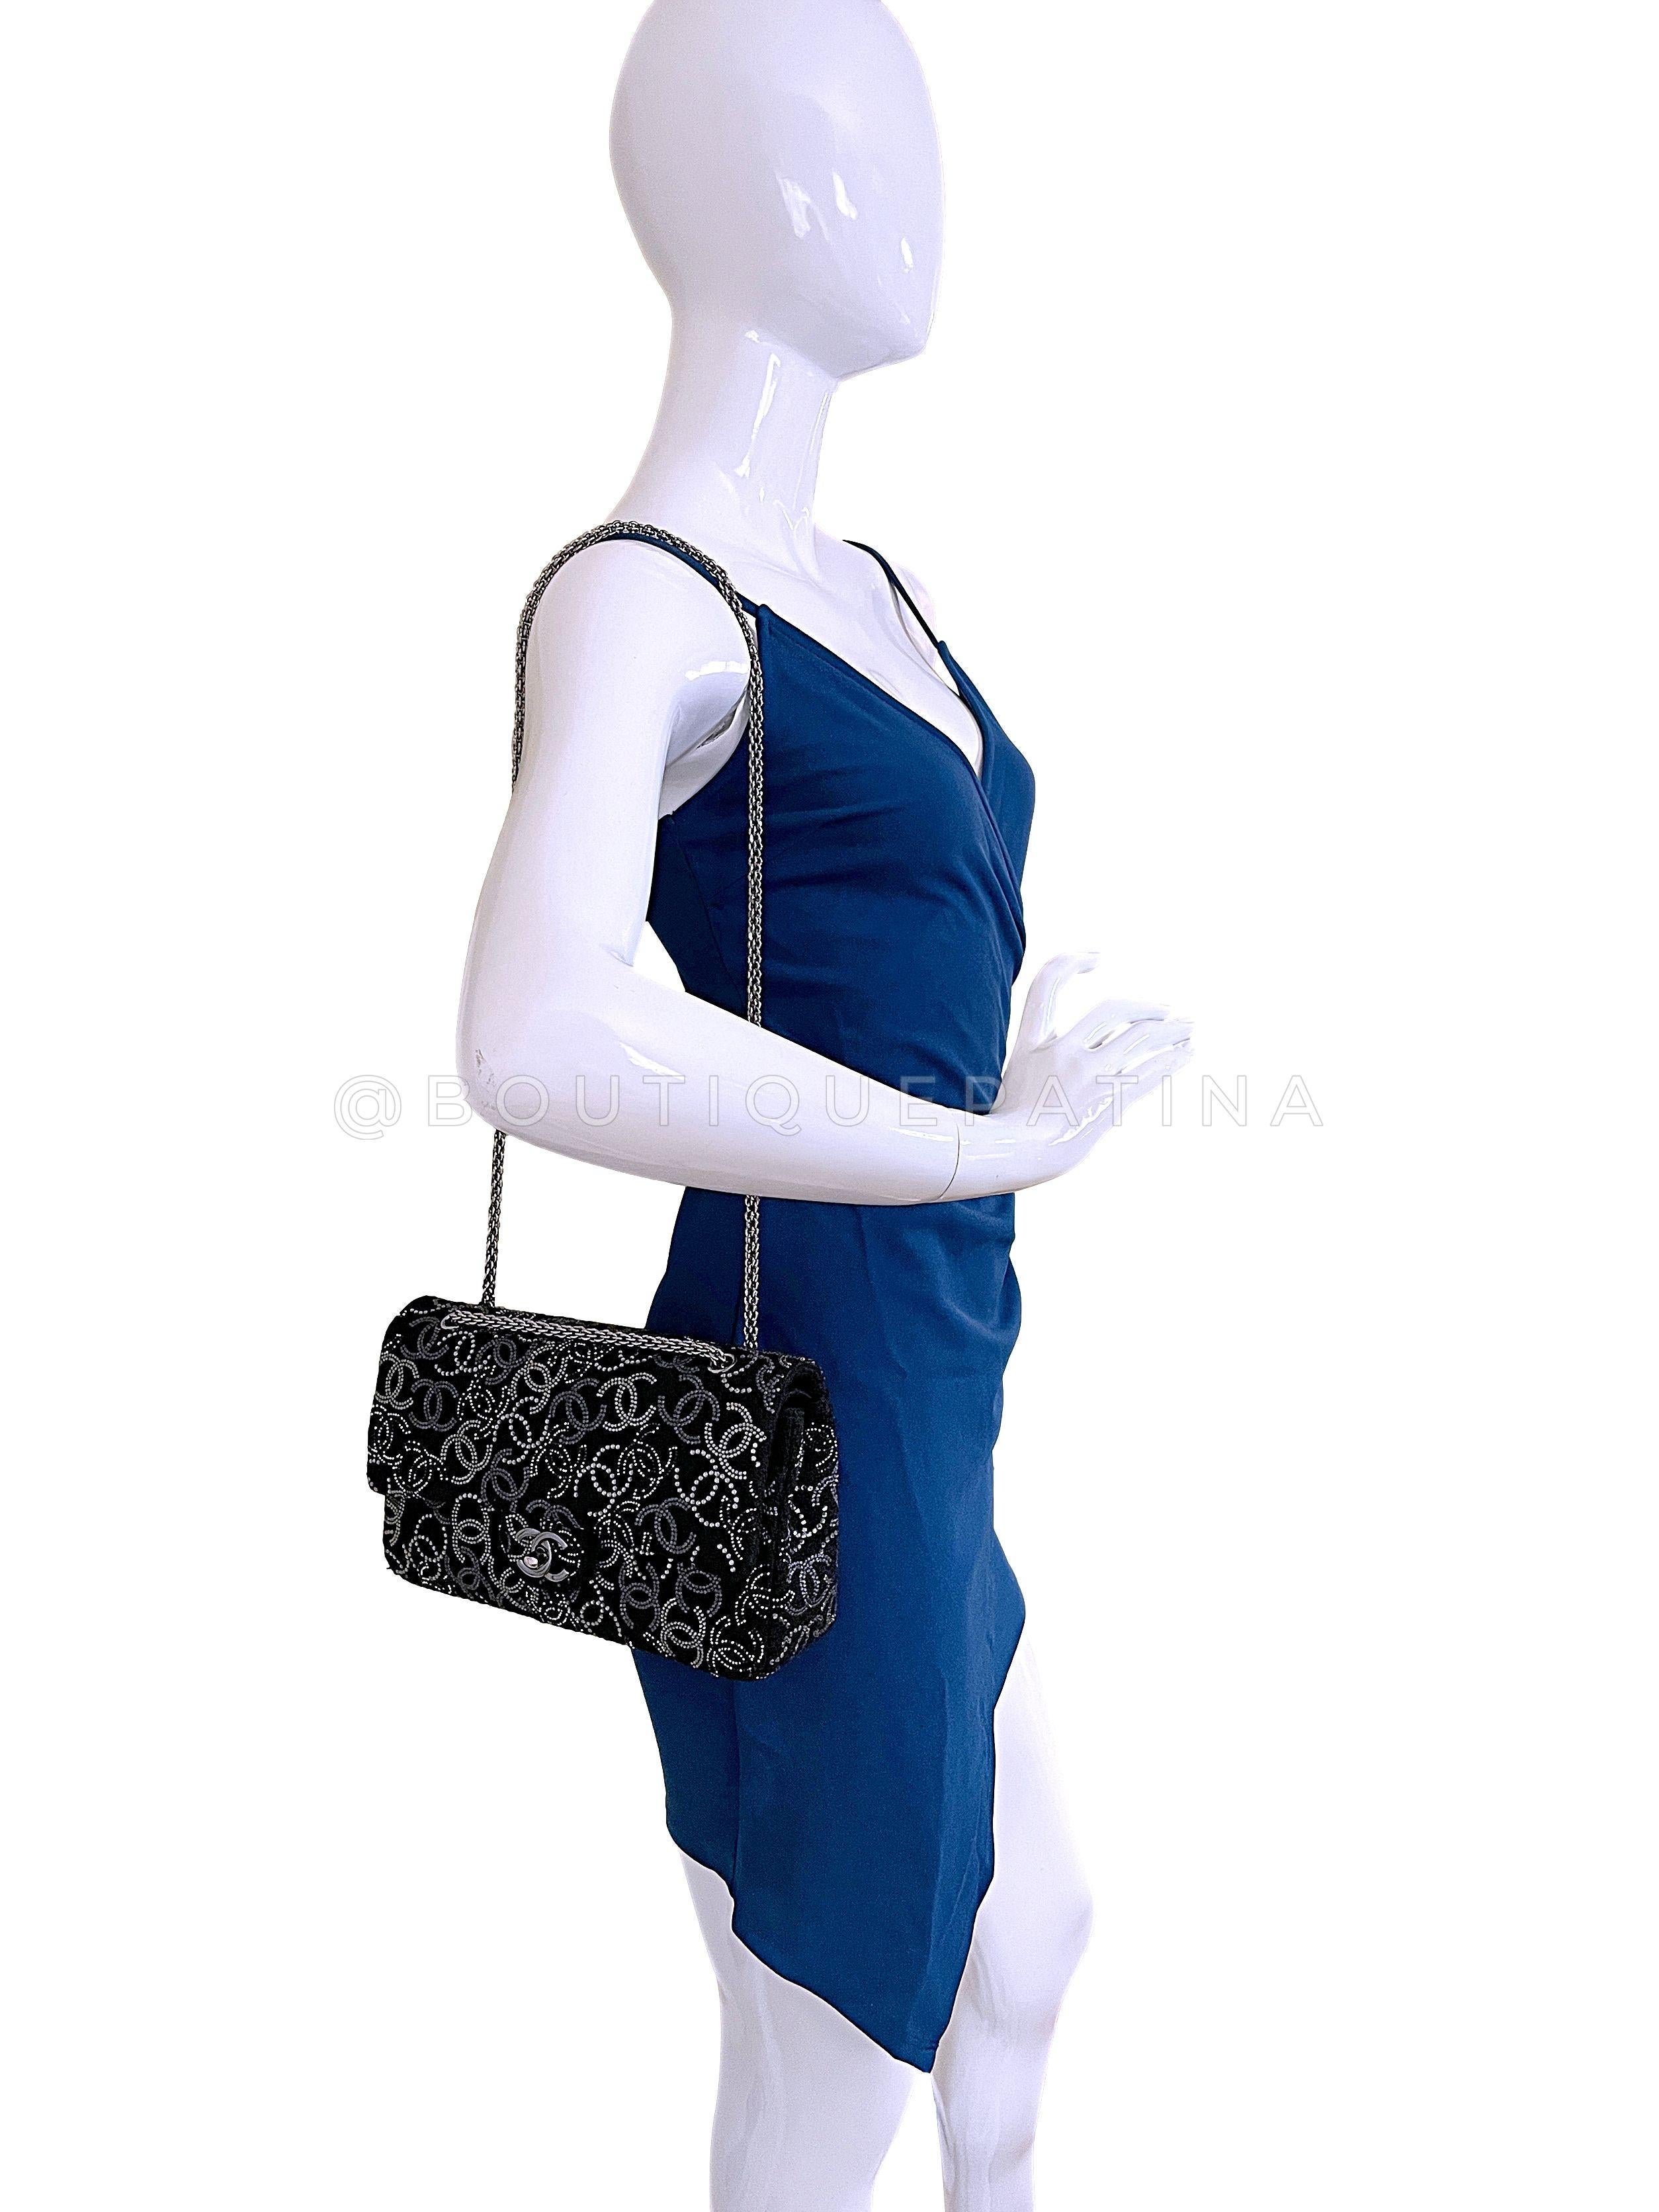 Chanel 2010 Black Paris-Shanghai Pudong Medium Classic Double Flap Bag 67299 For Sale 11